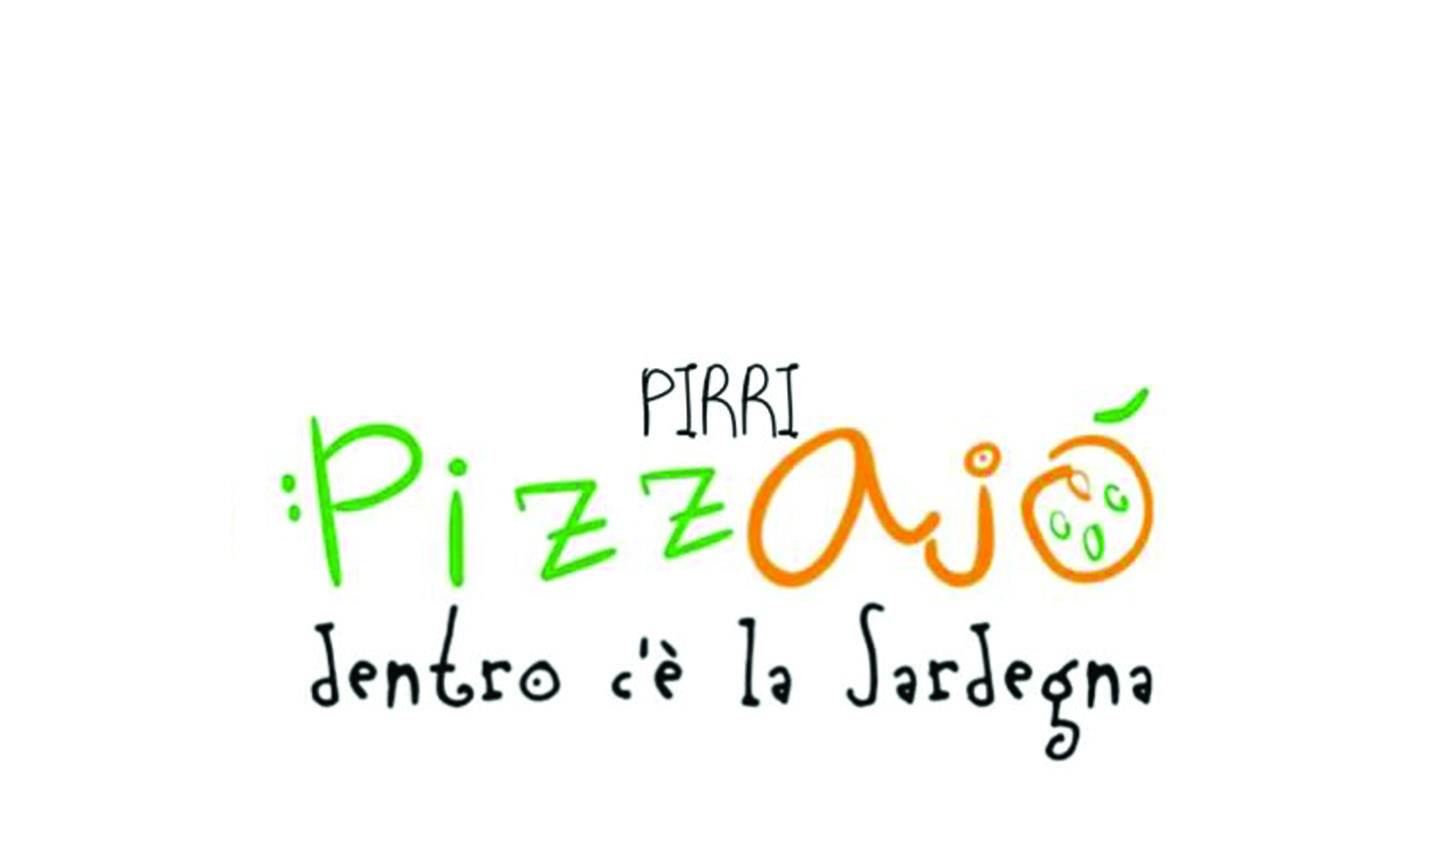 Pizzajo’ Pirri